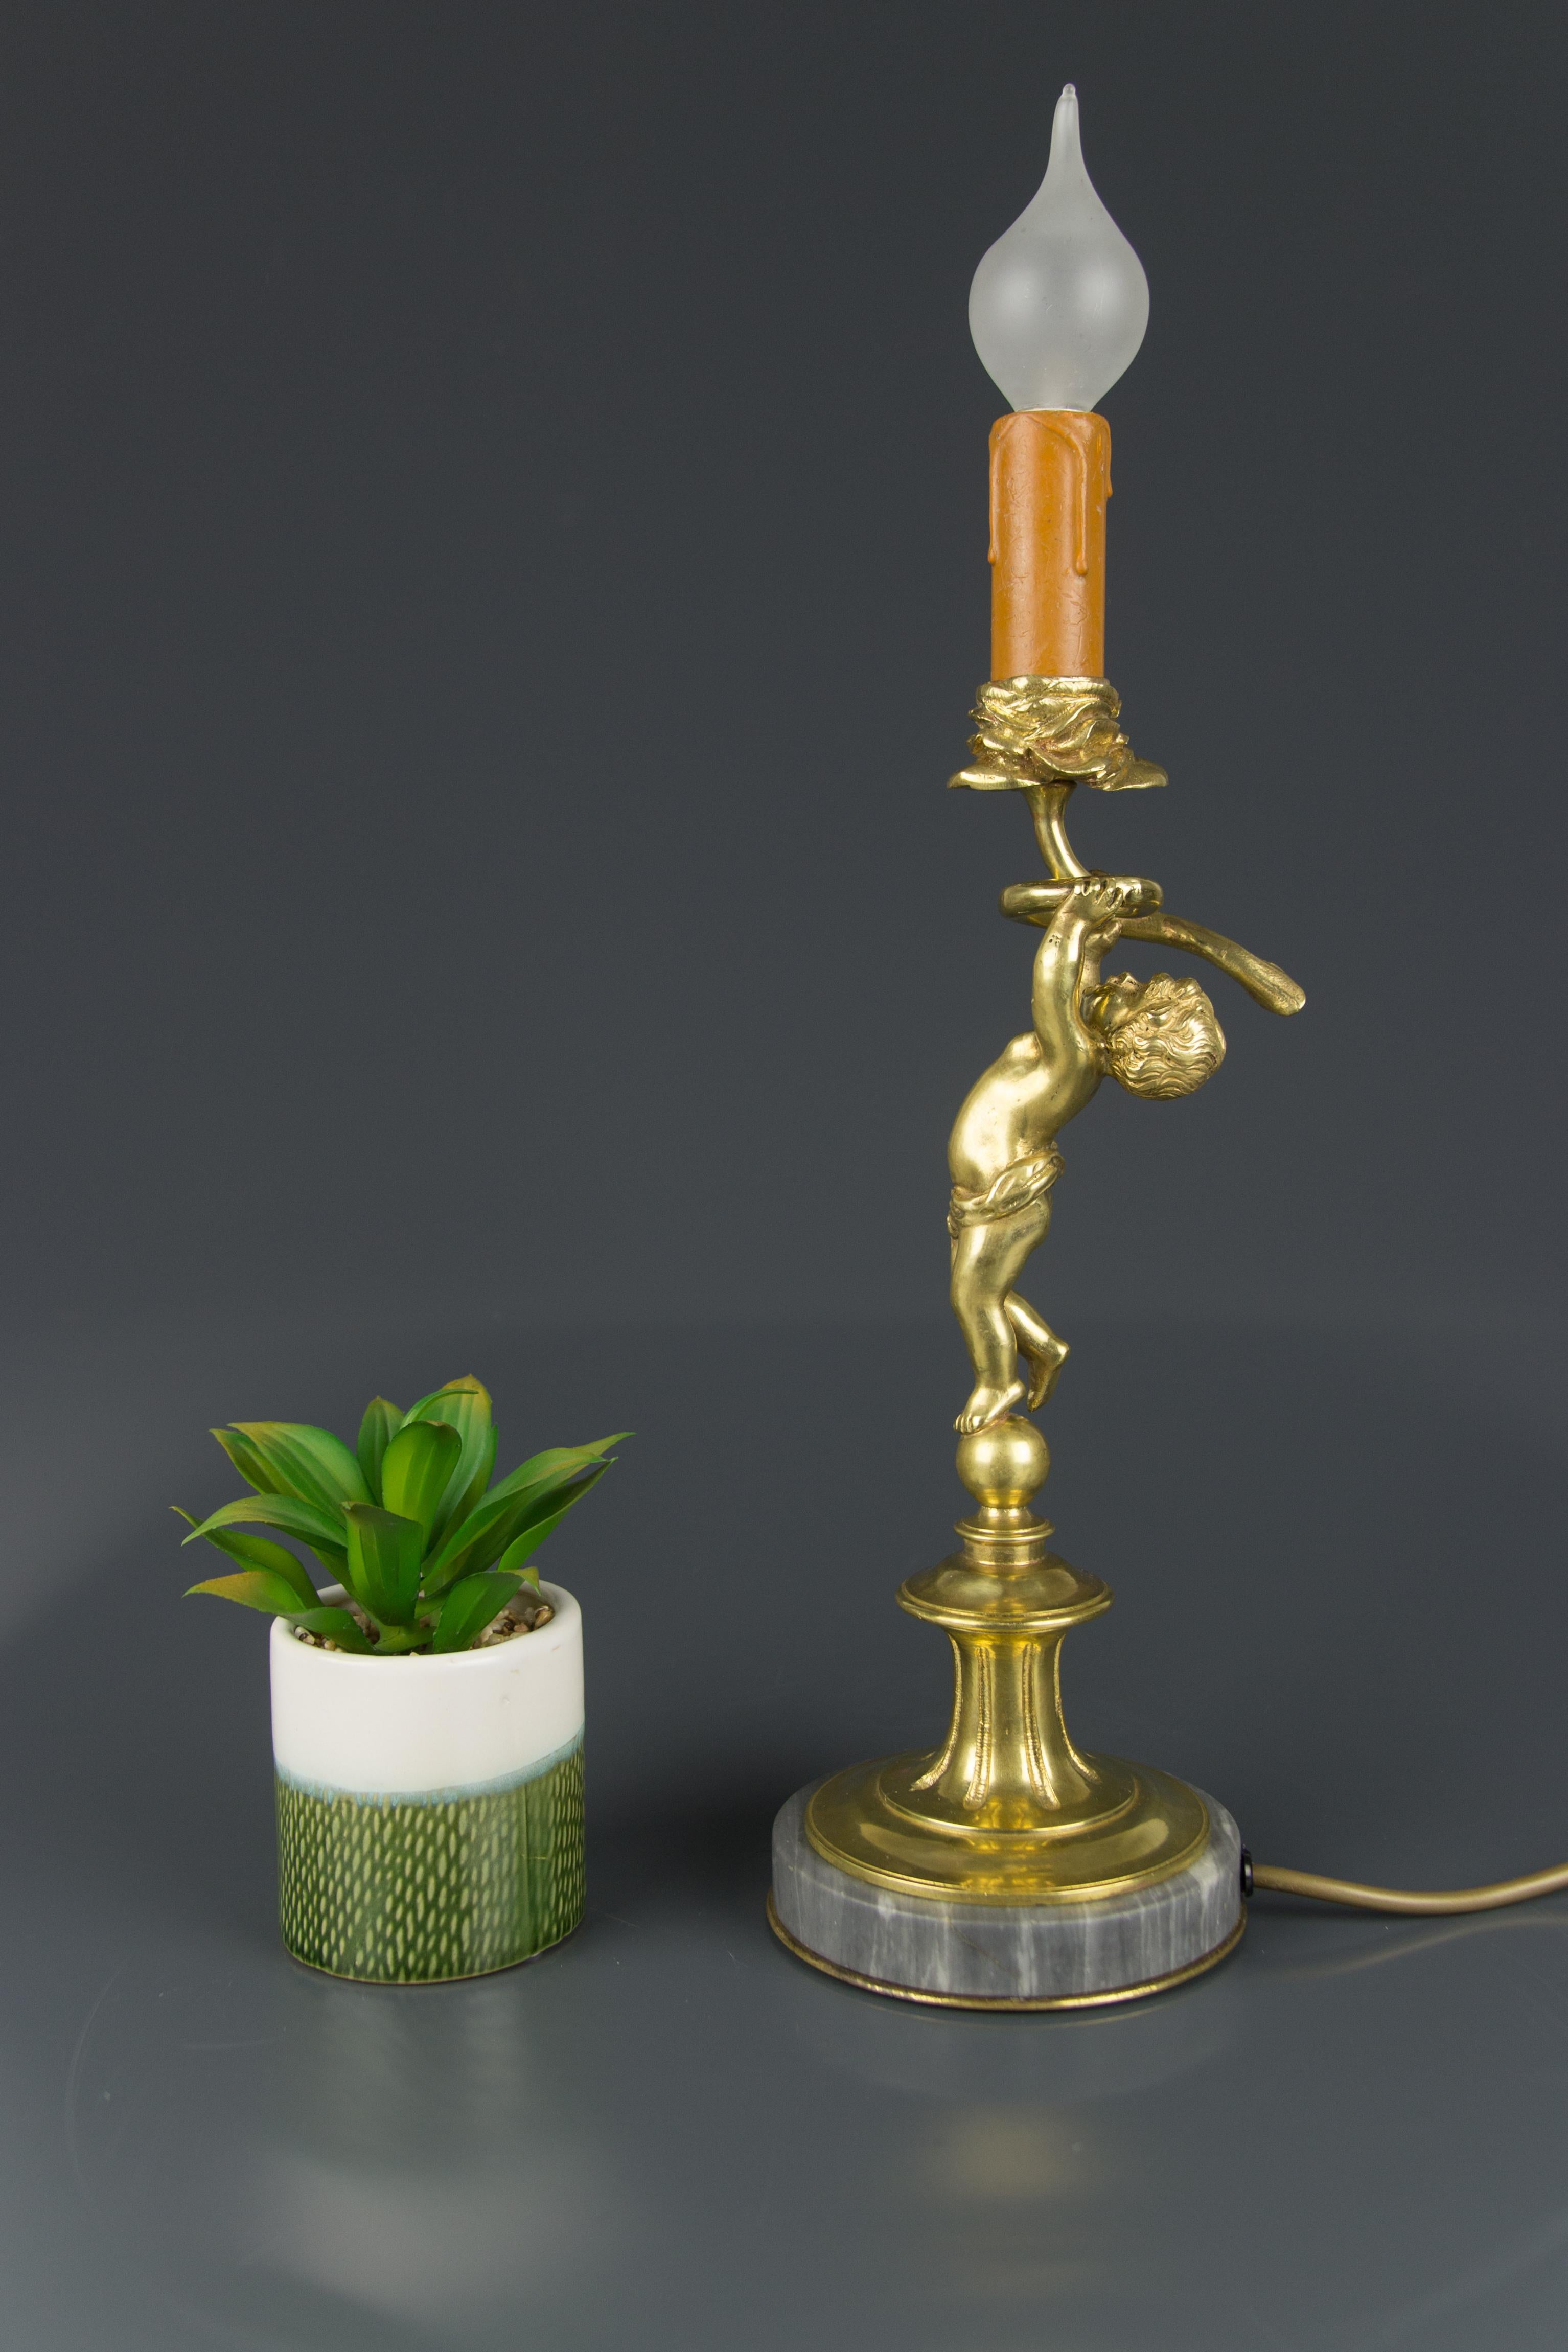 Cette adorable lampe de table en bronze présente la figure en bronze d'un chérubin posé sur une base circulaire en marbre gris et tenant une bougie en forme de fleur.
Une douille pour une ampoule de taille E14.
La lampe peut être utilisée en toute